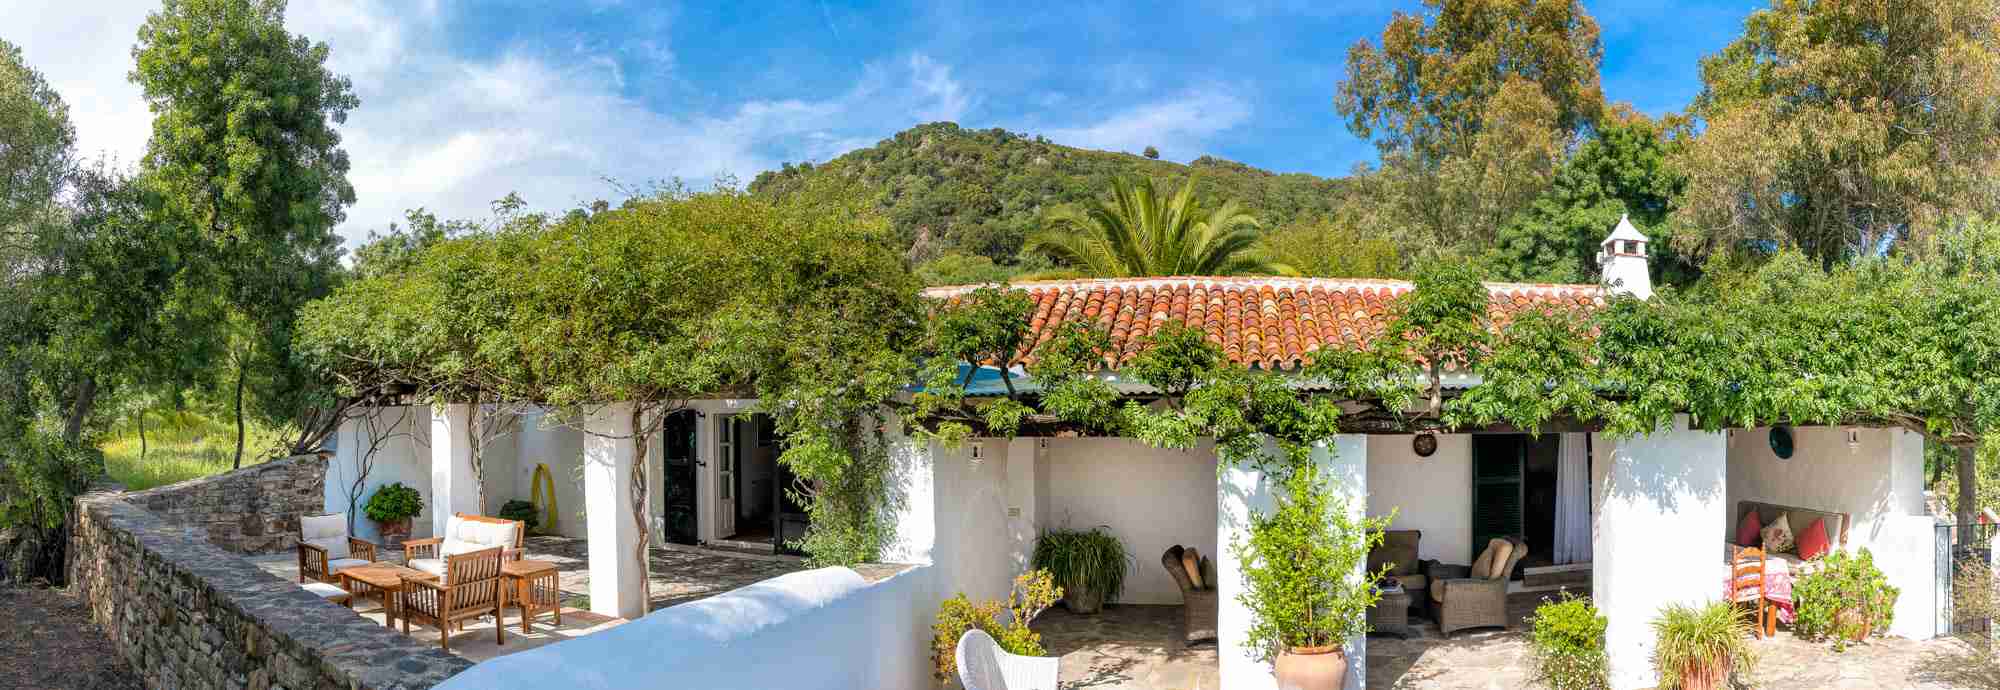 Casa de campo tradicional Andaluza excelente para vida al aire libre